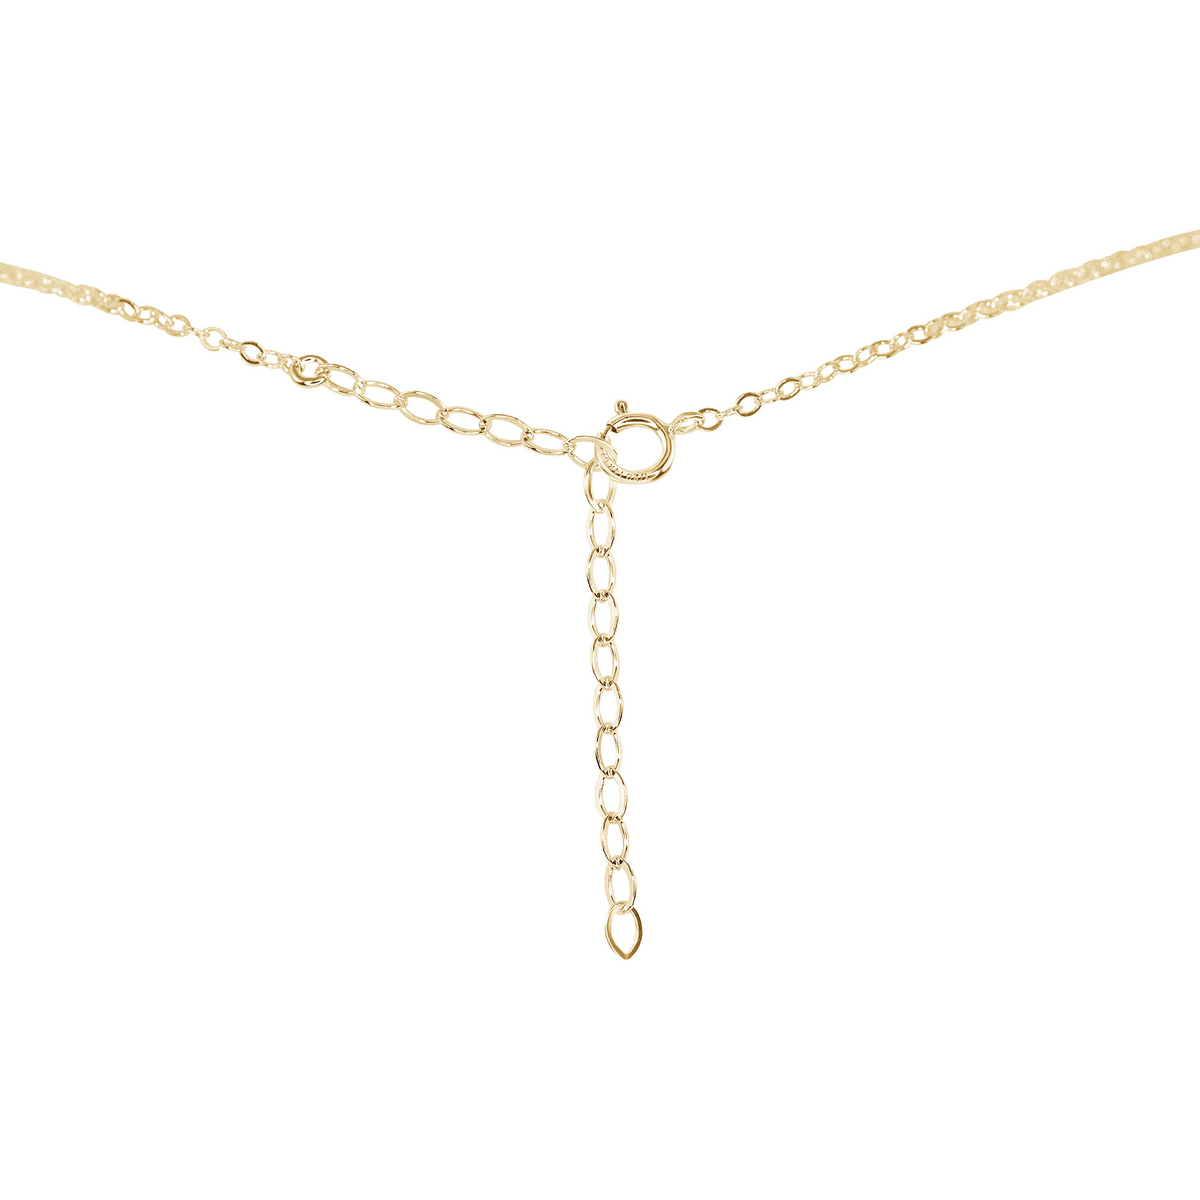 Tiny Raw Citrine Pendant Necklace - Tiny Raw Citrine Pendant Necklace - 14k Gold Fill / Cable - Luna Tide Handmade Crystal Jewellery